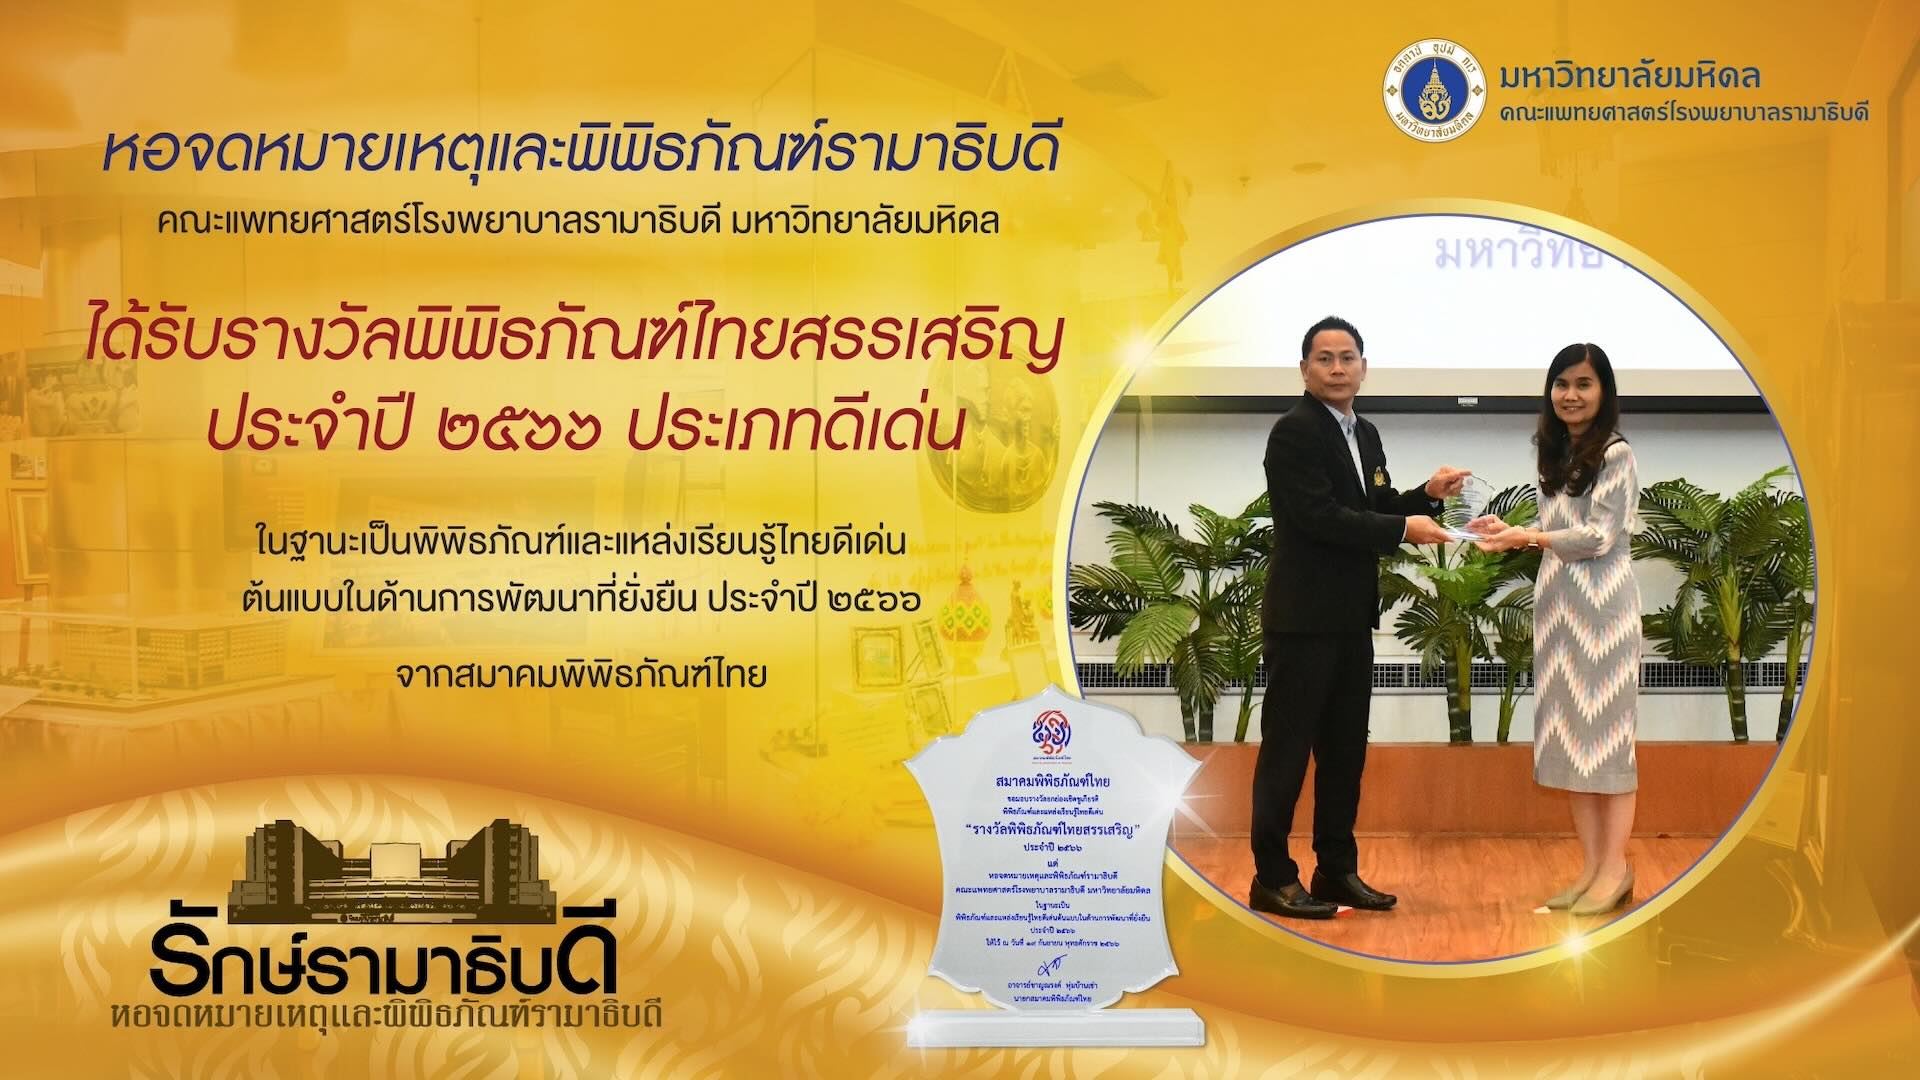 หอจดหมายเหตุและพิพิธภัณฑ์รามาธิบดีคณะแพทยศาสตร์โรงพยาบาลรามาธิบดี มหาวิทยาลัยมหิดล ได้รับรางวัลพิพิธภัณฑ์ไทยสรรเสริญ ประจำปี 2566 ประเภทดีเด่น